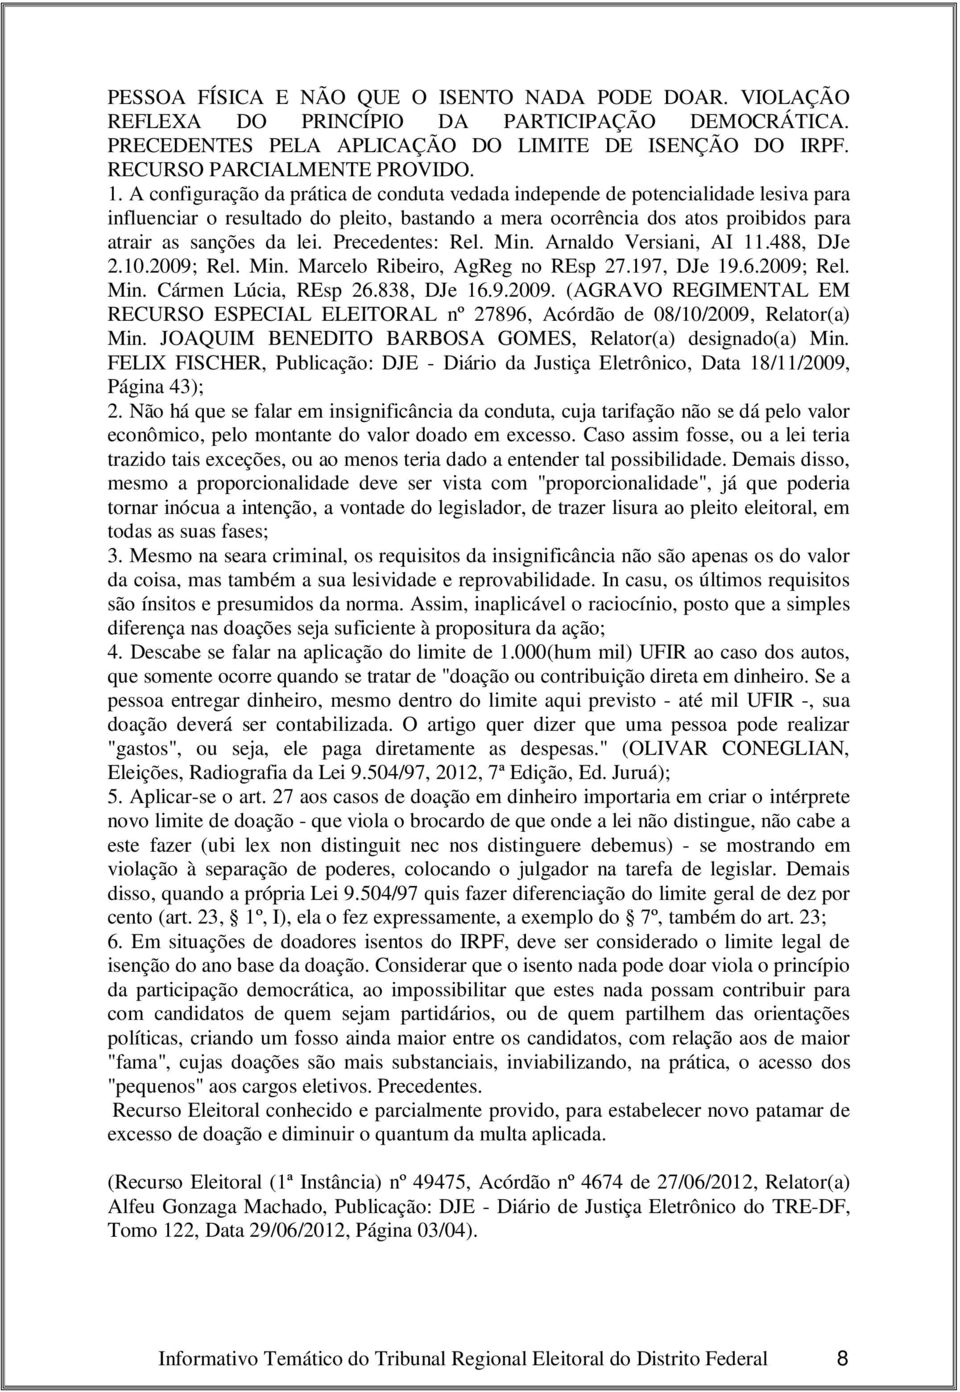 Precedentes: Rel. Min. Arnaldo Versiani, AI 11.488, DJe 2.10.2009; Rel. Min. Marcelo Ribeiro, AgReg no REsp 27.197, DJe 19.6.2009; Rel. Min. Cármen Lúcia, REsp 26.838, DJe 16.9.2009. (AGRAVO REGIMENTAL EM RECURSO ESPECIAL ELEITORAL nº 27896, Acórdão de 08/10/2009, Relator(a) Min.